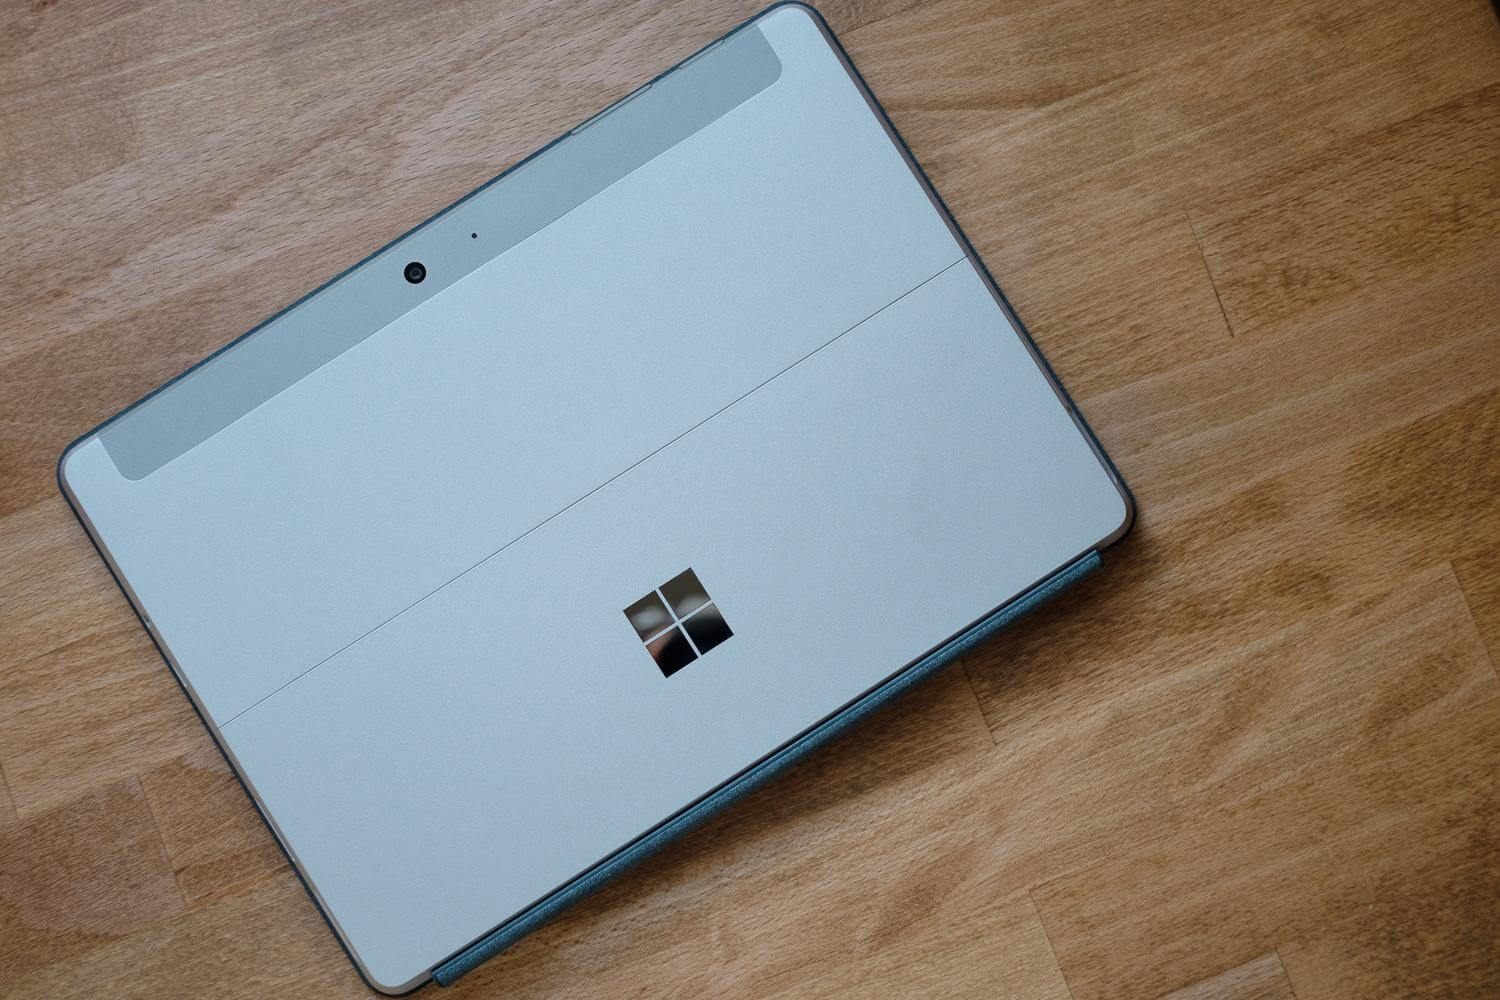 Surface Go 4GB/64GBを購入。ストレージ容量さえ許容できれば下位 